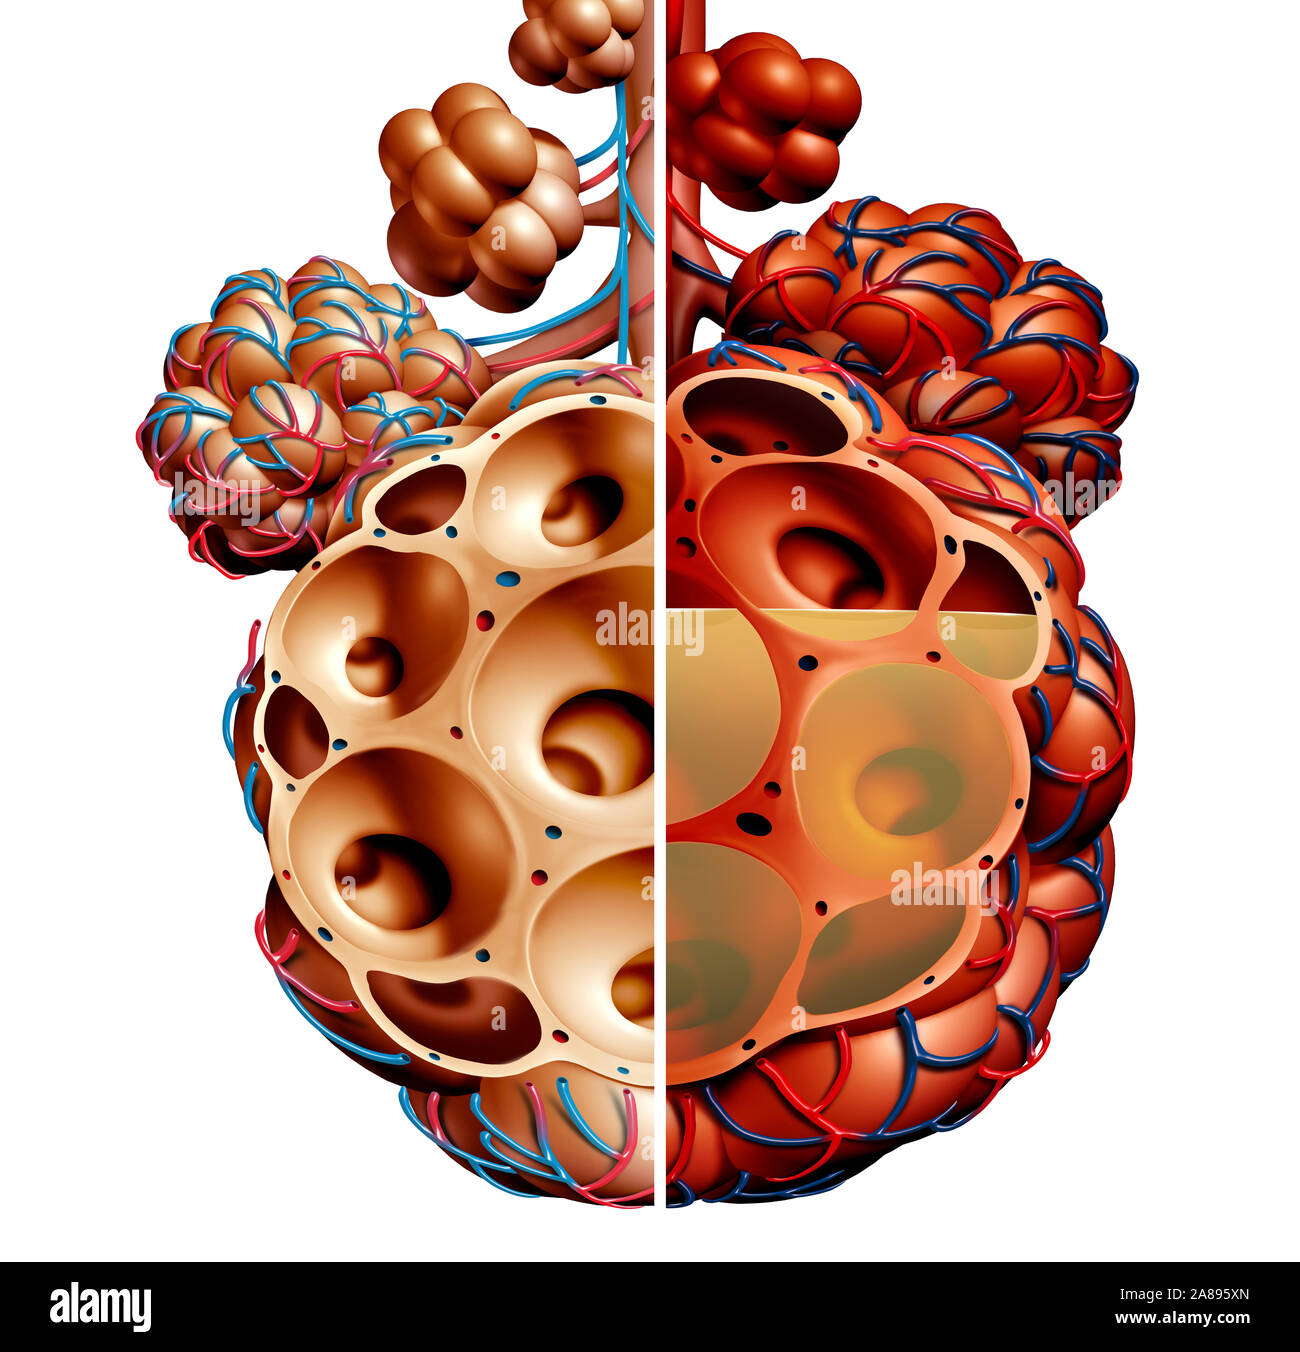 Pneumonie und Lungenbläschen mit Flüssigkeit Diagramm oder alveolus Entzündung Anatomie Diagramm als medizinisches Konzept von gesunden und ungesunden Lunge. Stockfoto